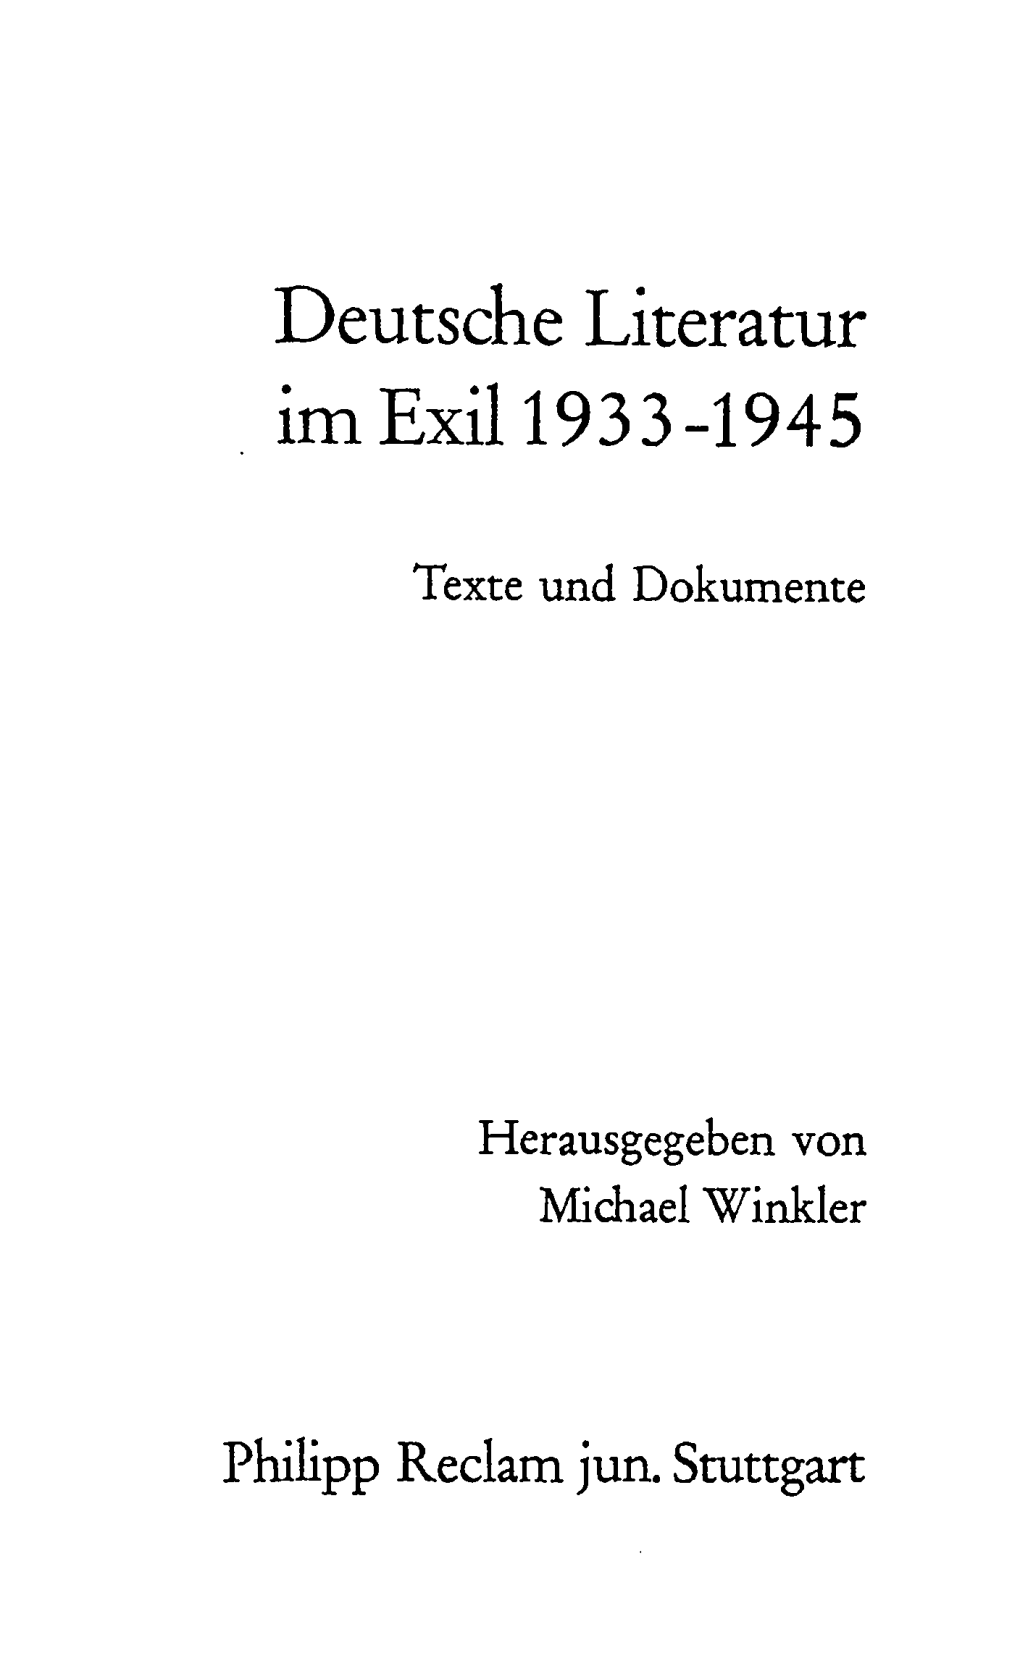 Deutsche Literatur Im Exil 1933-1945